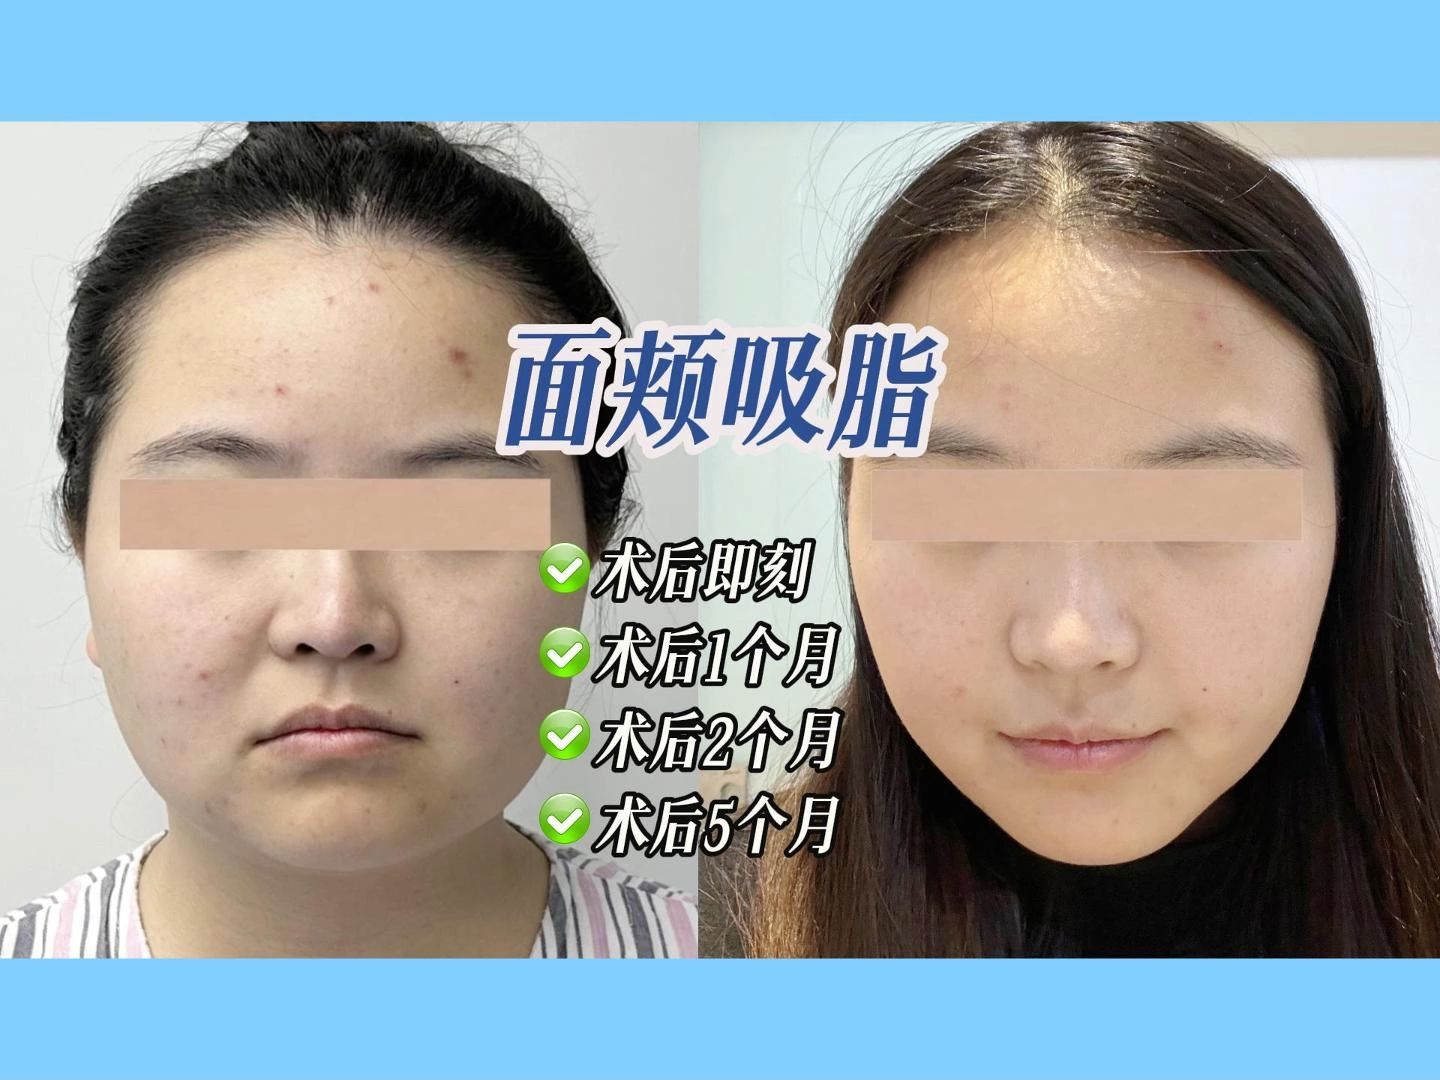 【案例】面部吸脂不同时期对比(5个月)